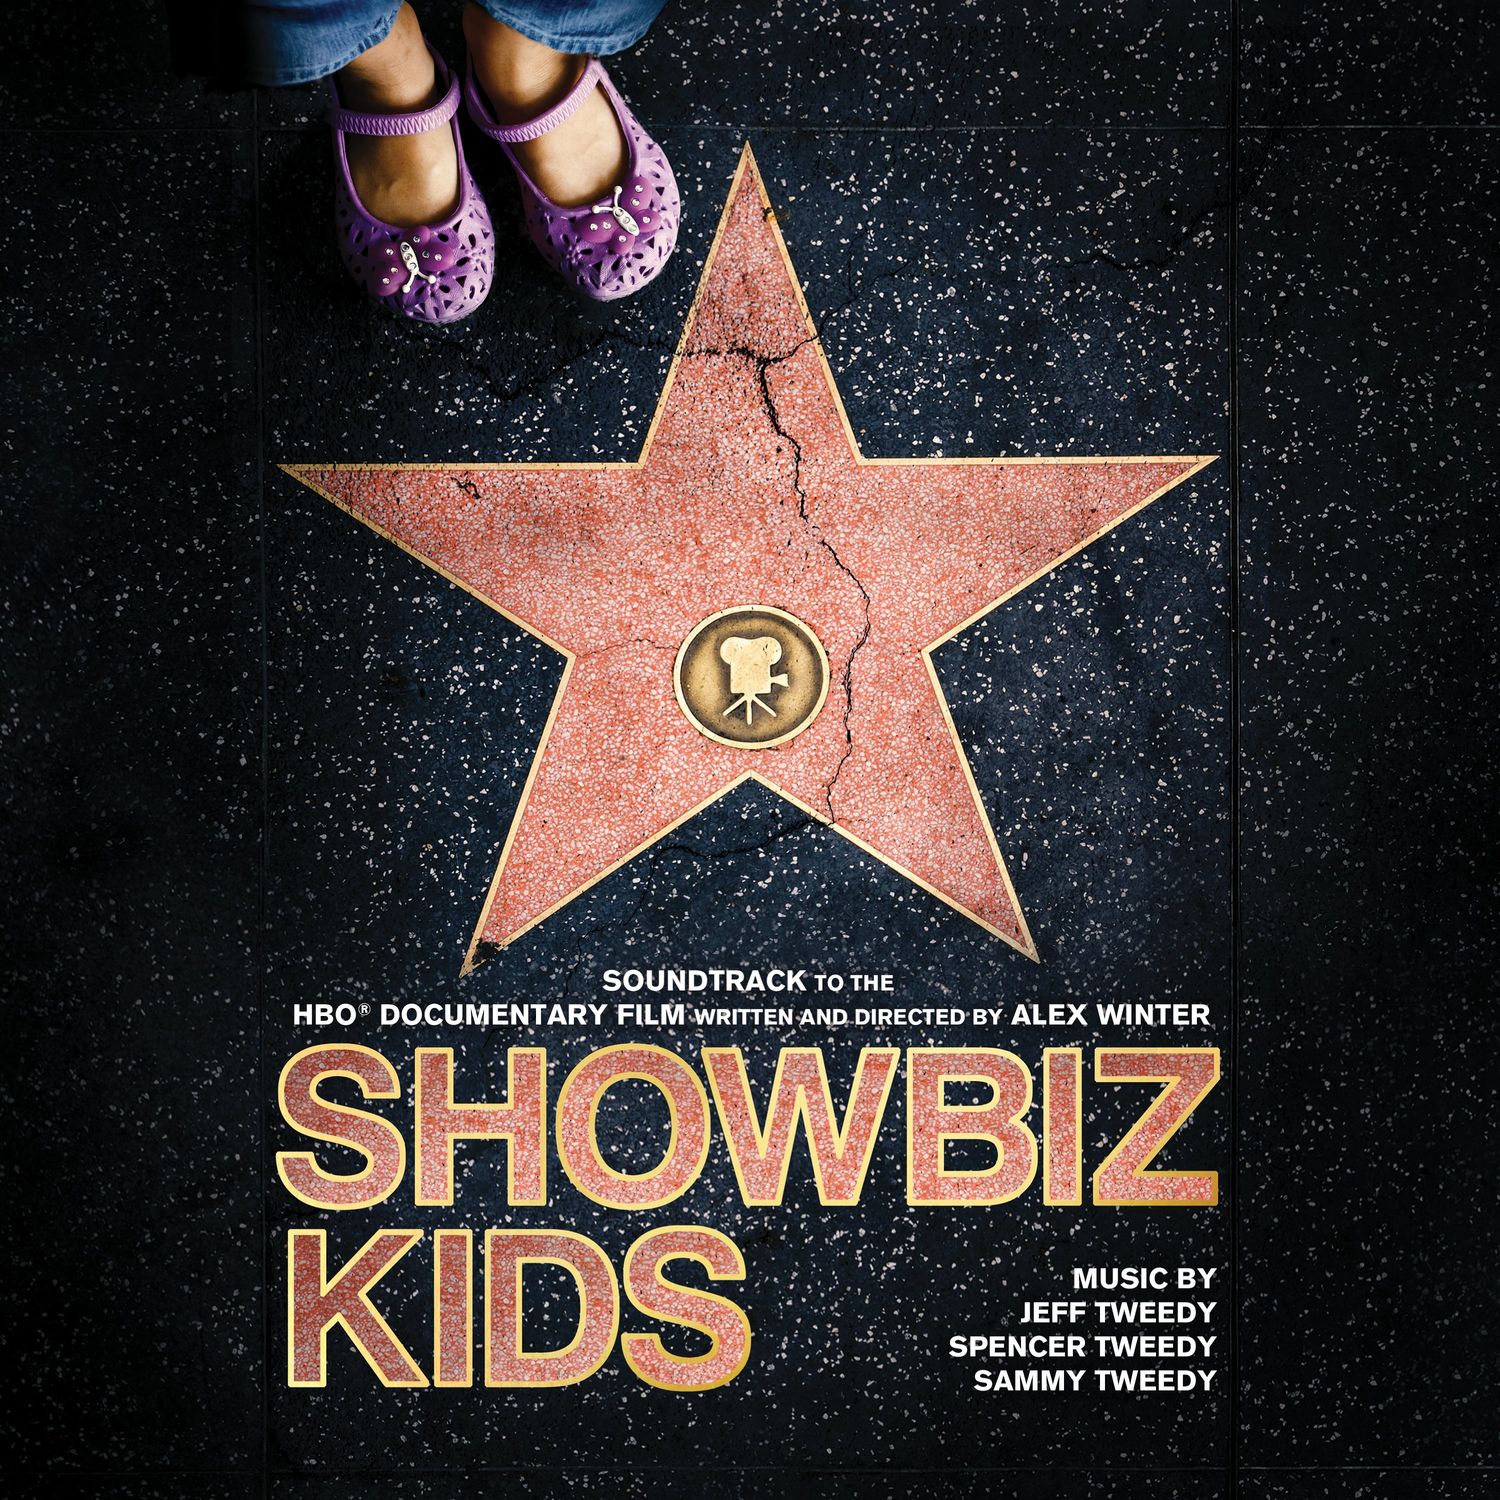 Jeff Tweedy, Sammy Tweedy & Spencer Tweedy – Showbiz Kids (Soundtrack to the HBO Documentary Film) (2020) [FLAC 24bit/44,1kHz]